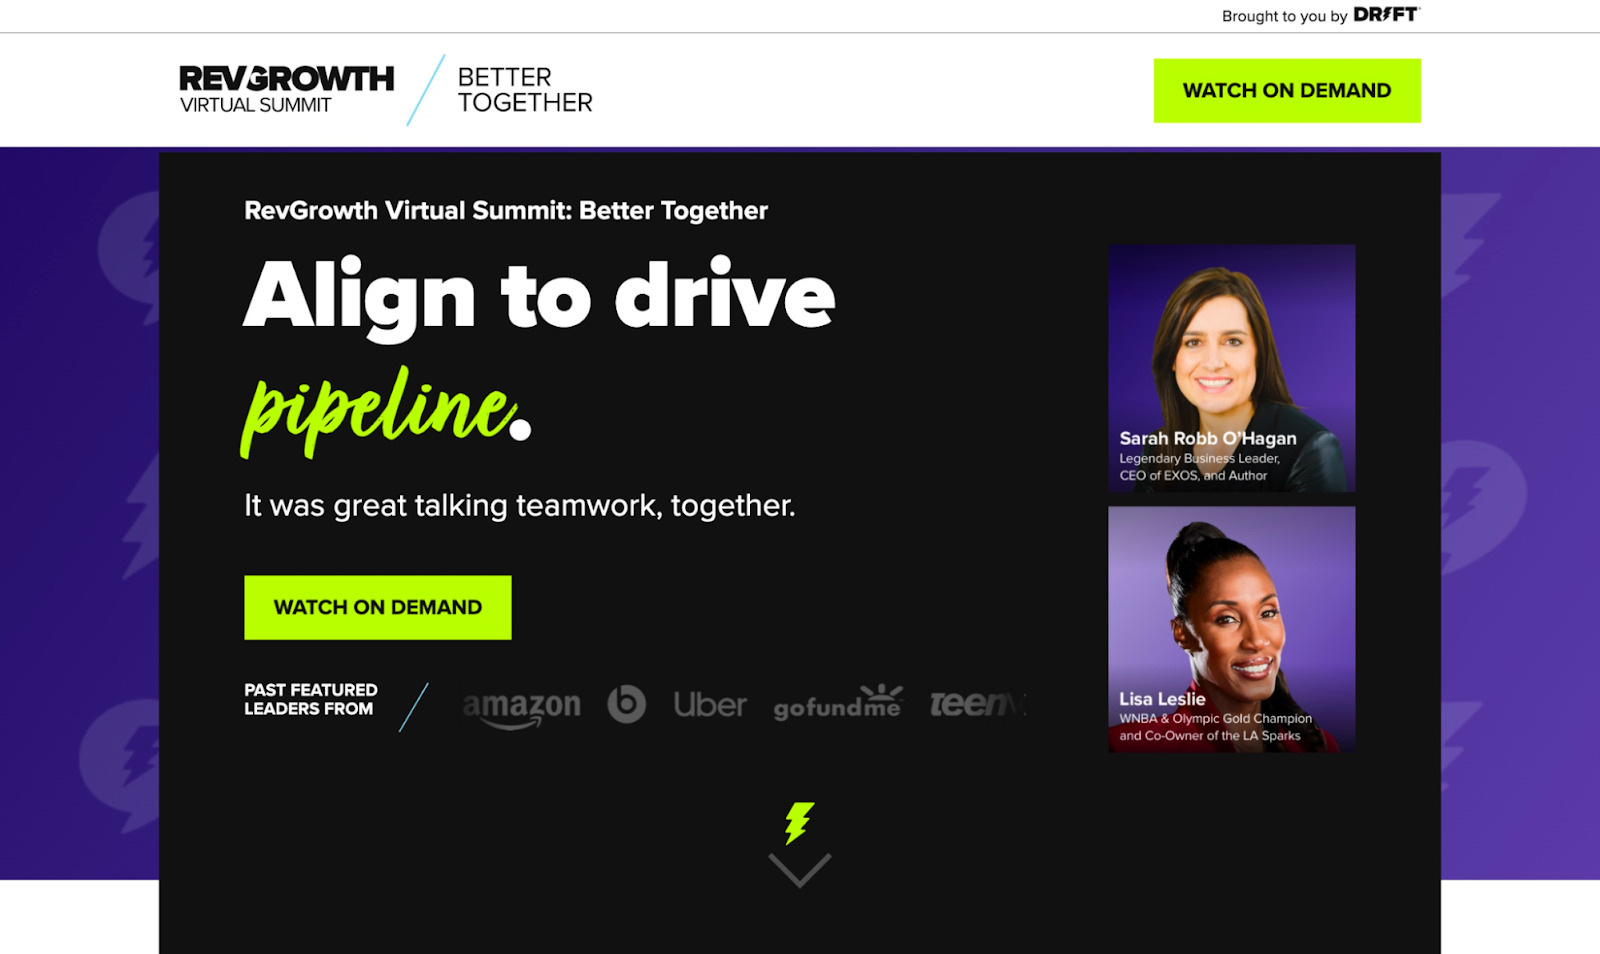 Página web sobre la cumbre virtual de Drift